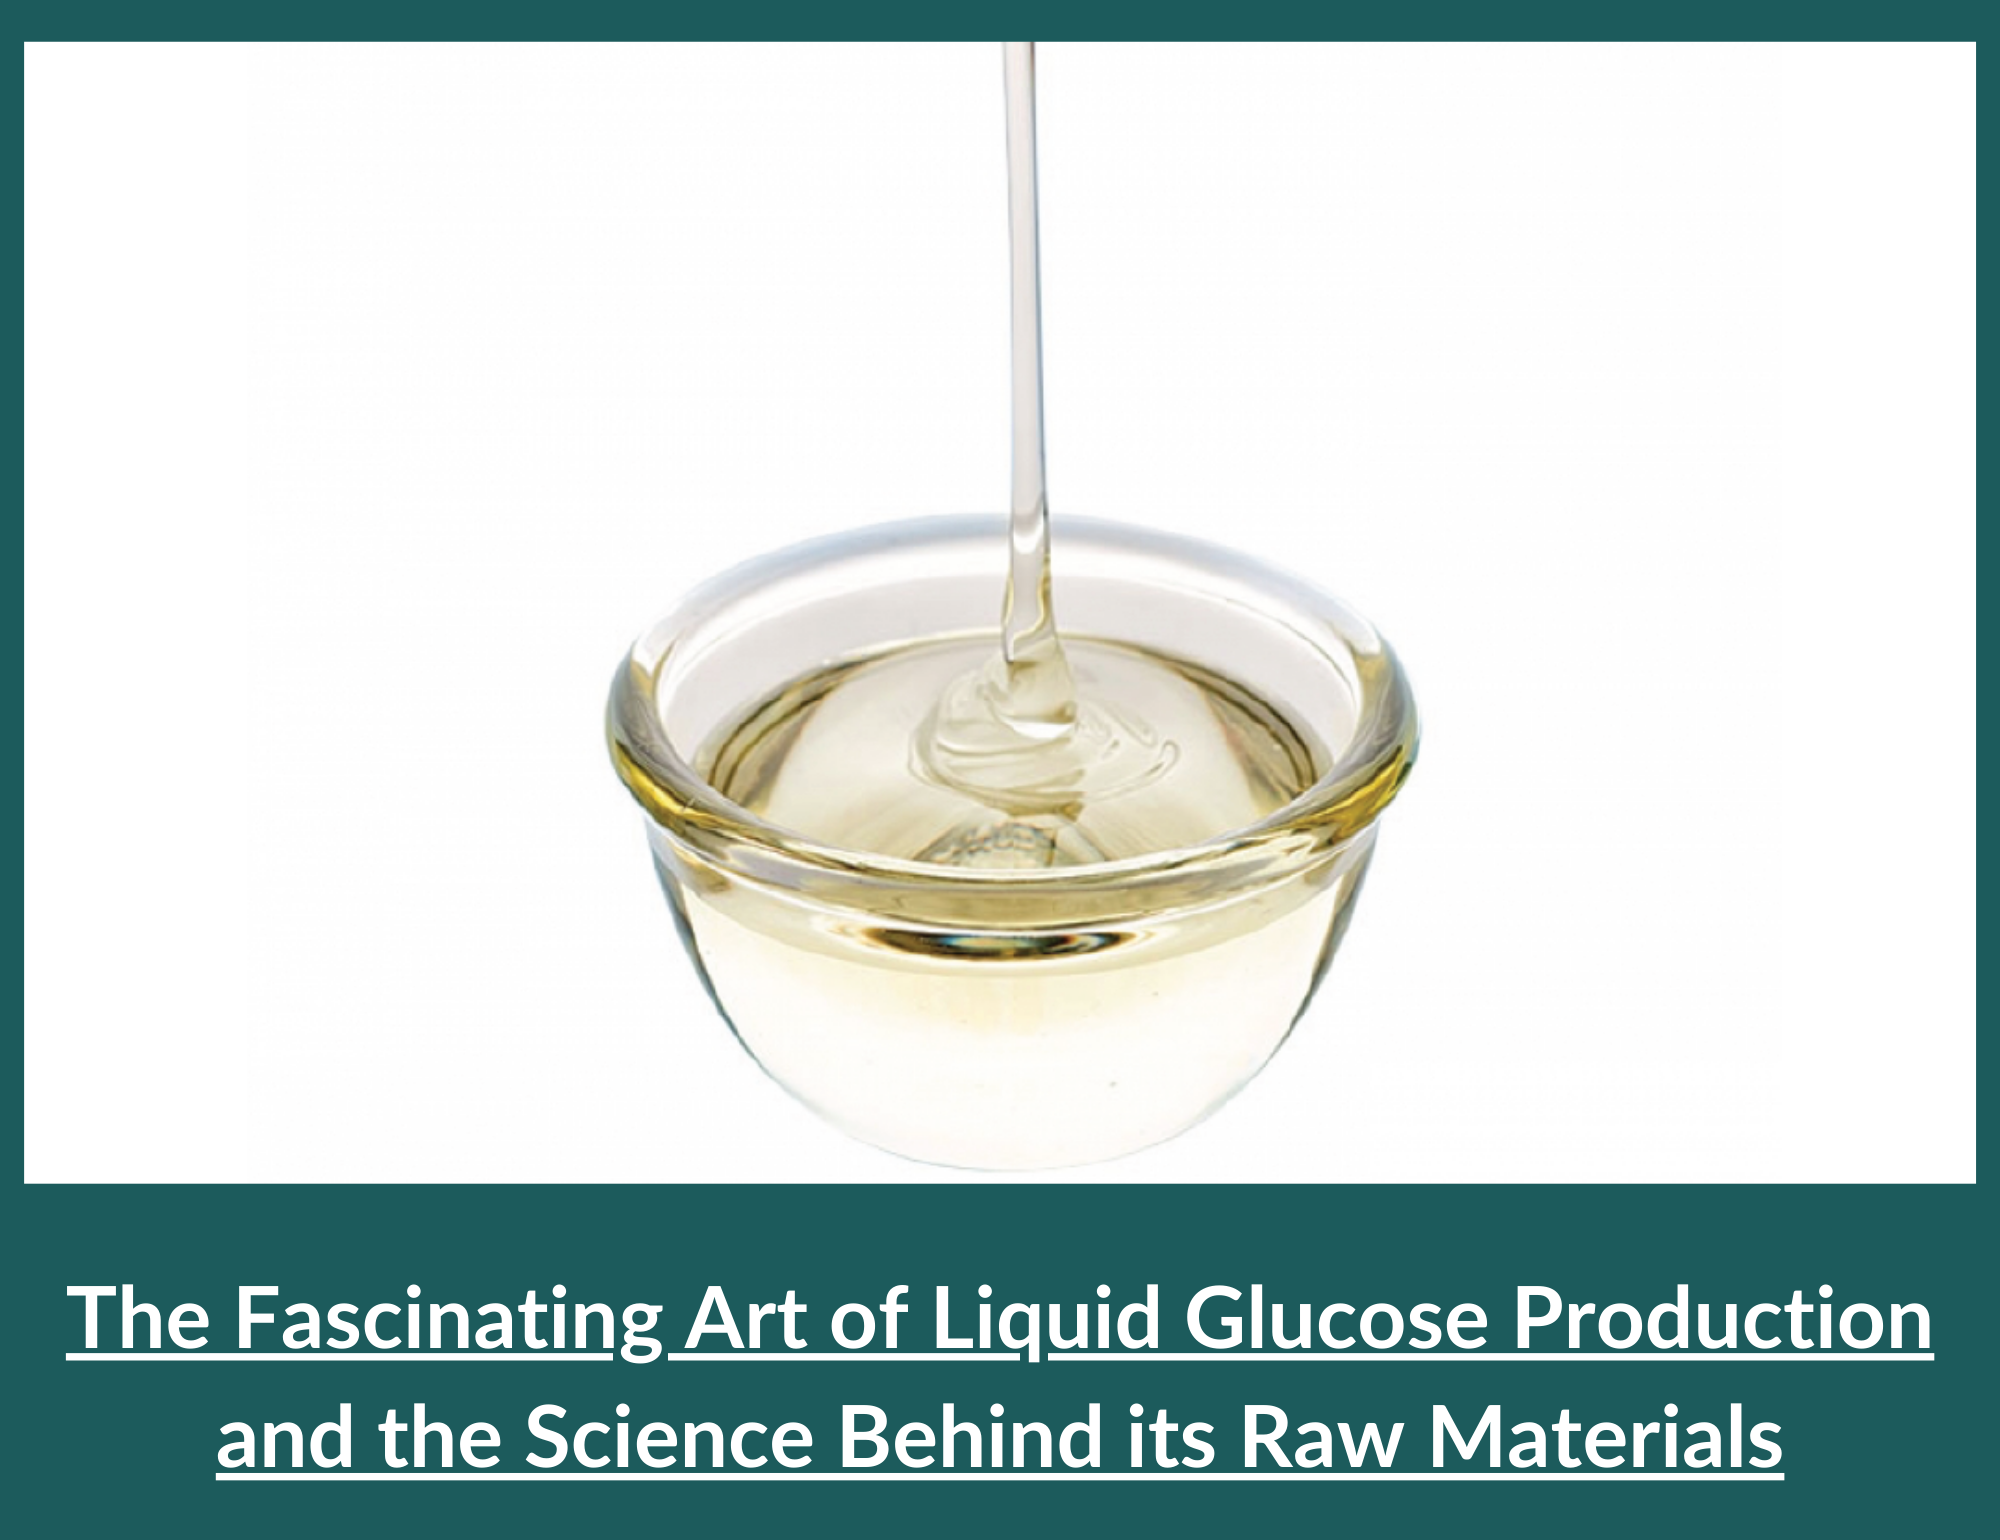 Liquid Glucose Production